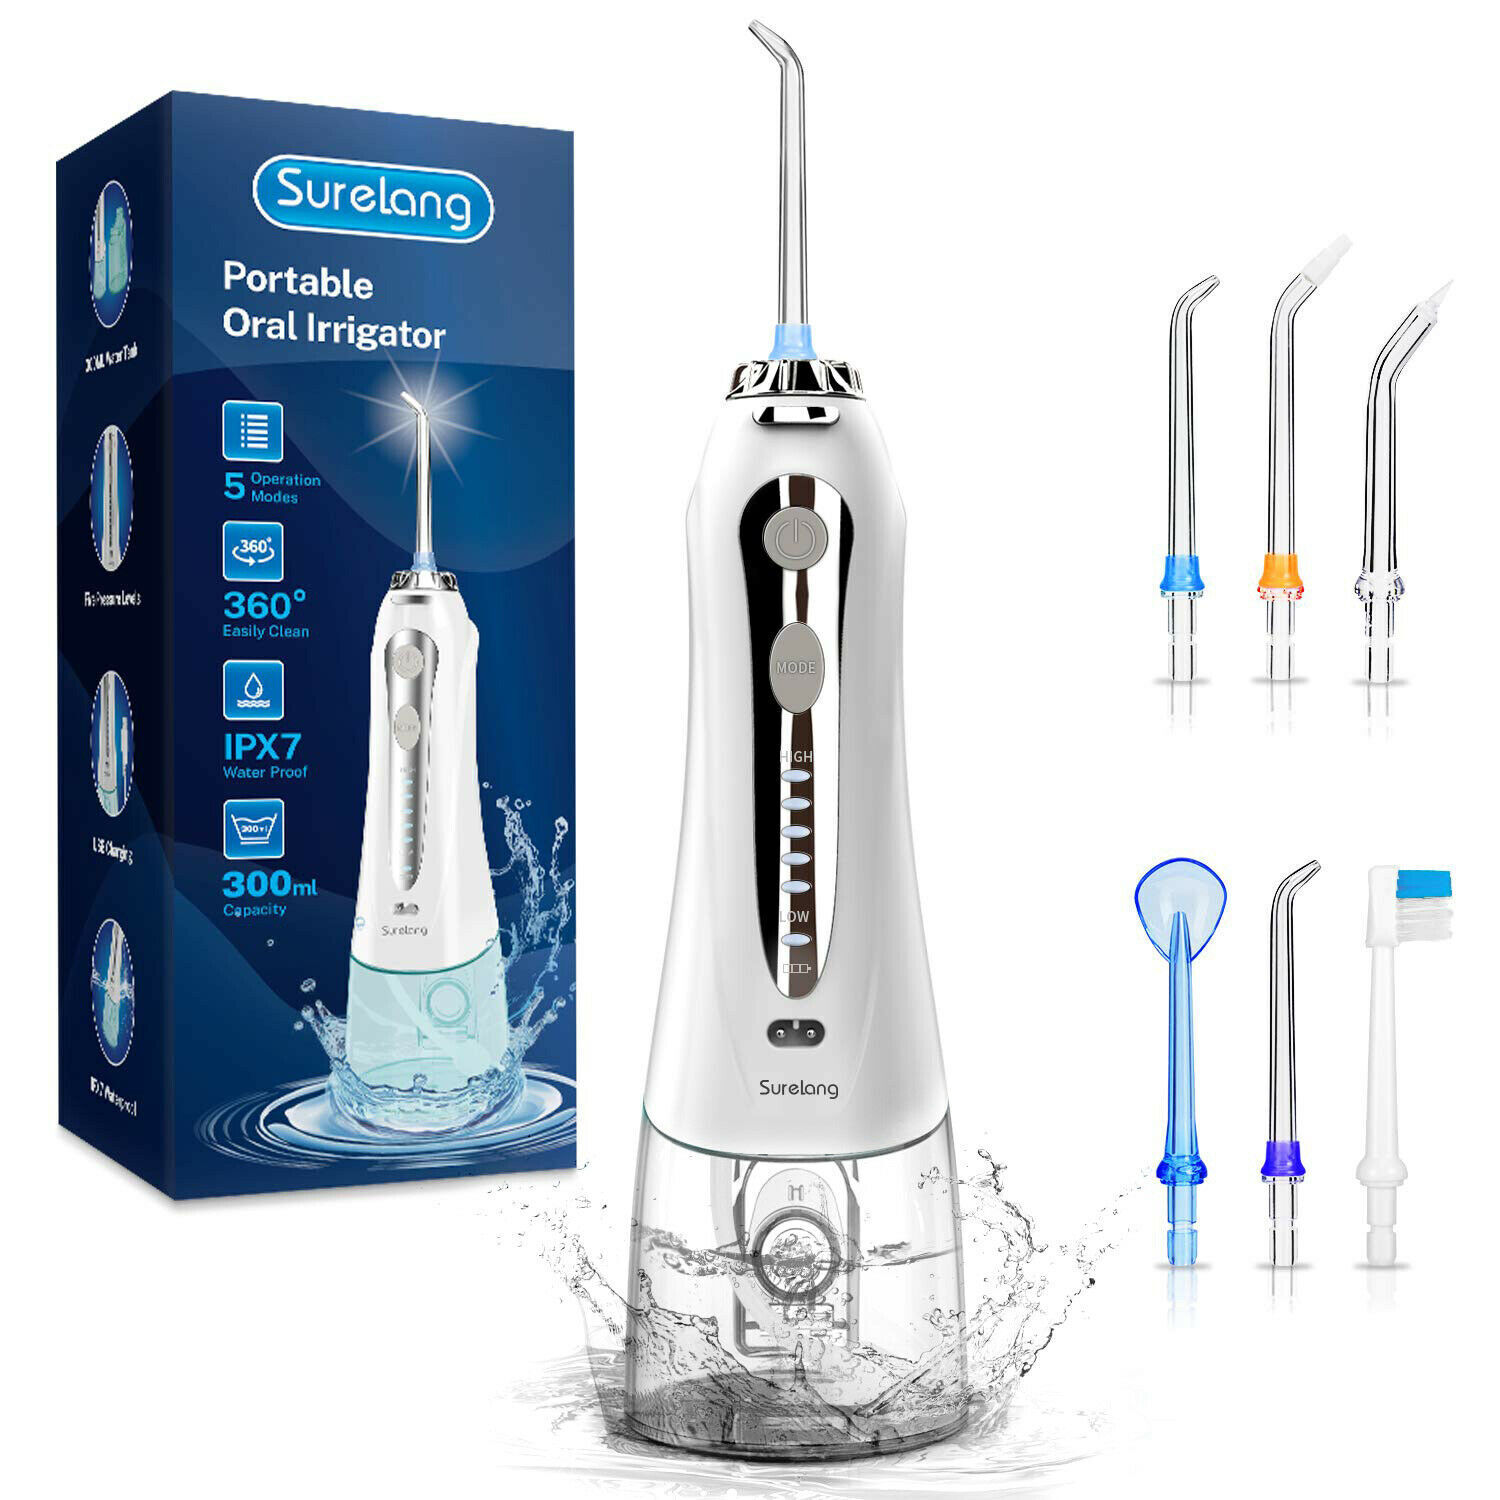 WATERPIK Cordless Water Flosser Dental Oral Irrigator Travel Teeth Cleaner Floss